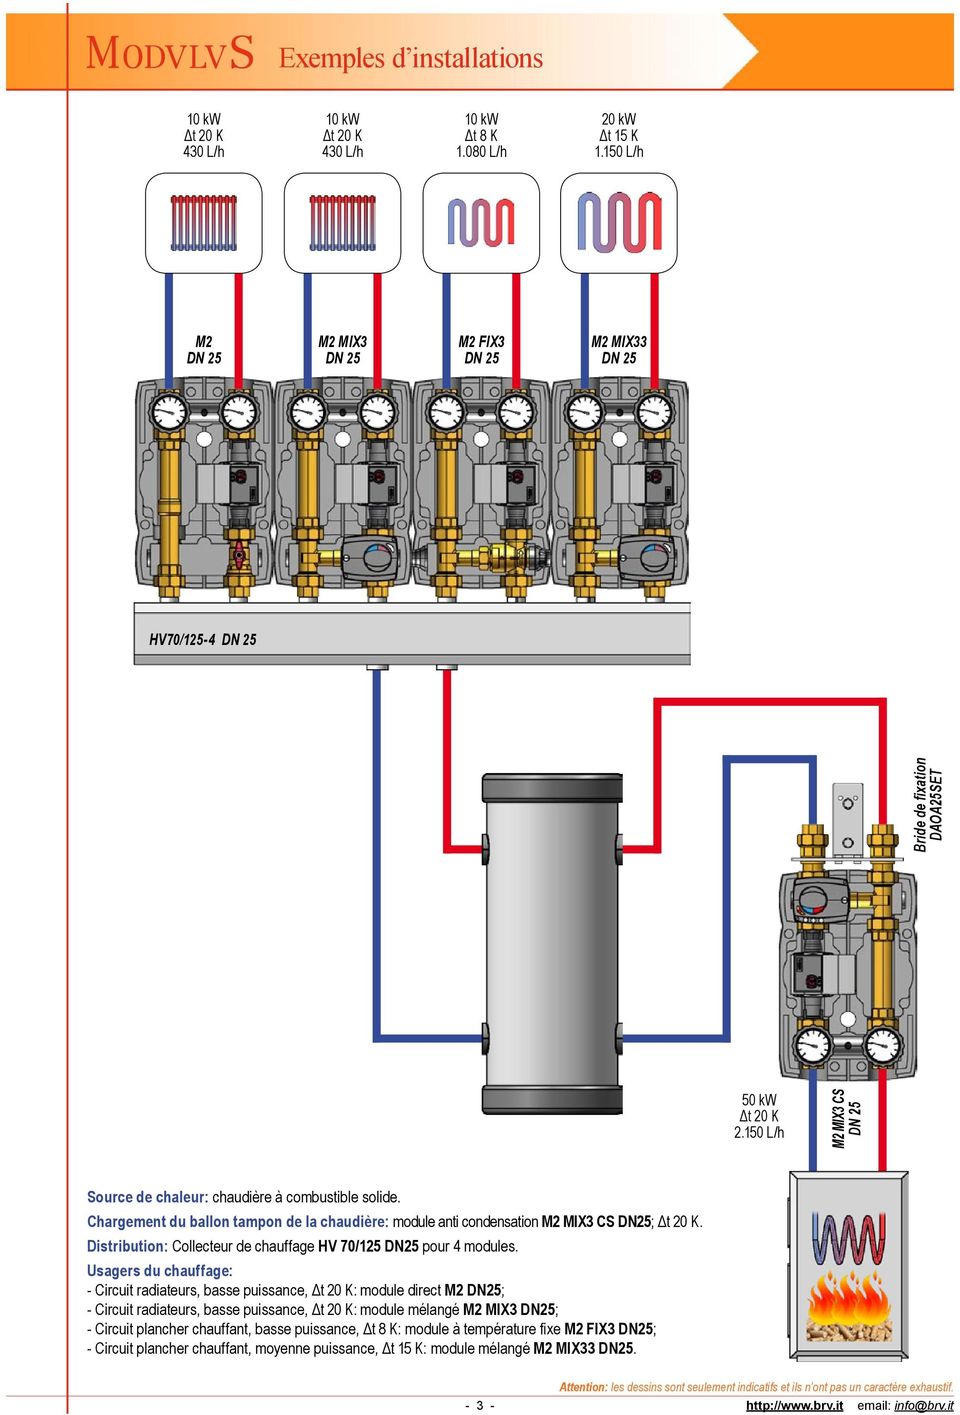 - Circuit radiateurs, basse puissance, : module direct DN25; - Circuit radiateurs, basse puissance, : module mélangé MIX3 DN25; - Circuit plancher